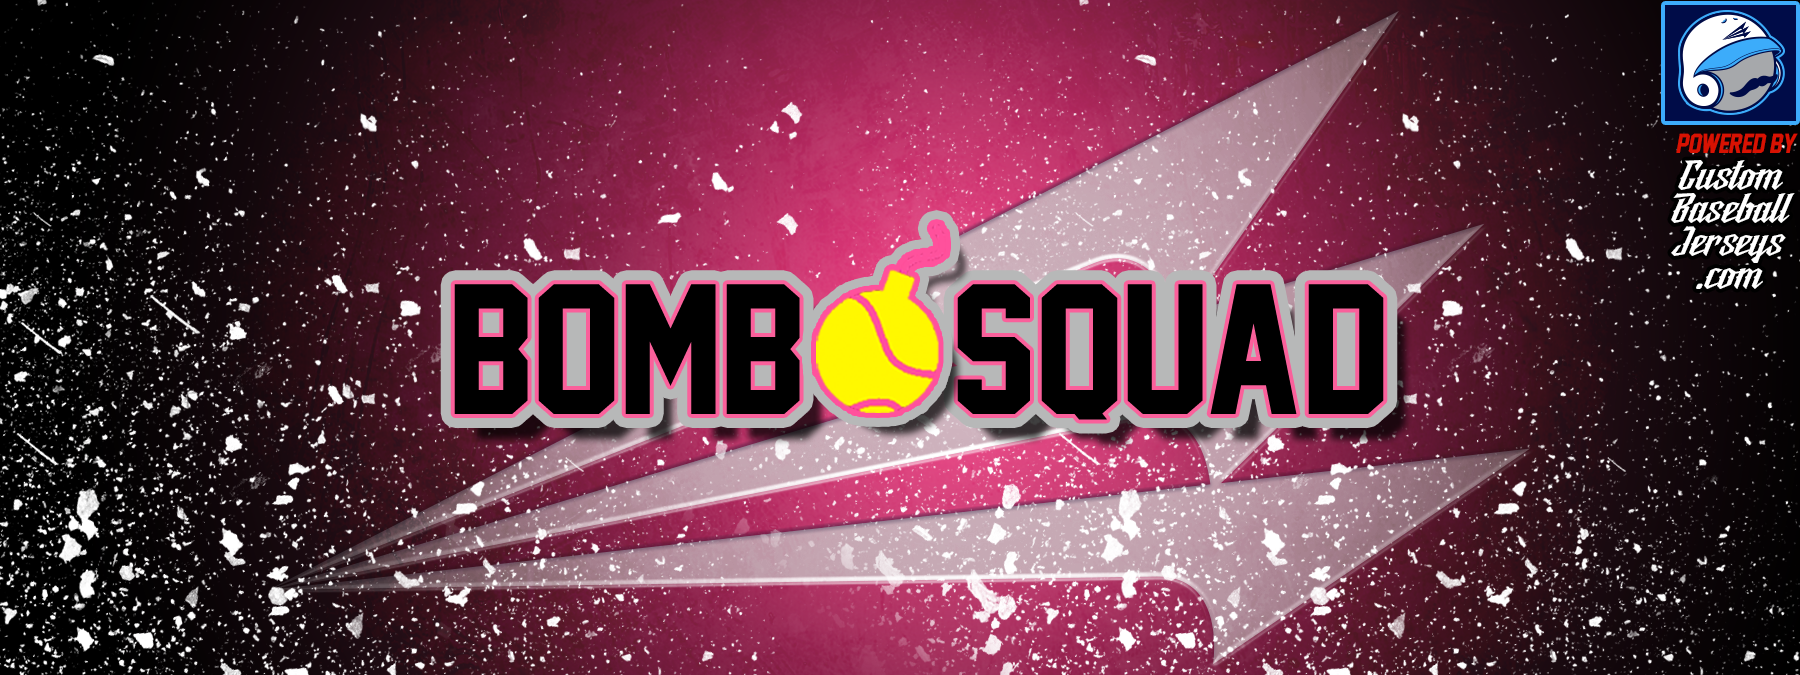 2016 bomb squad baseball 2017